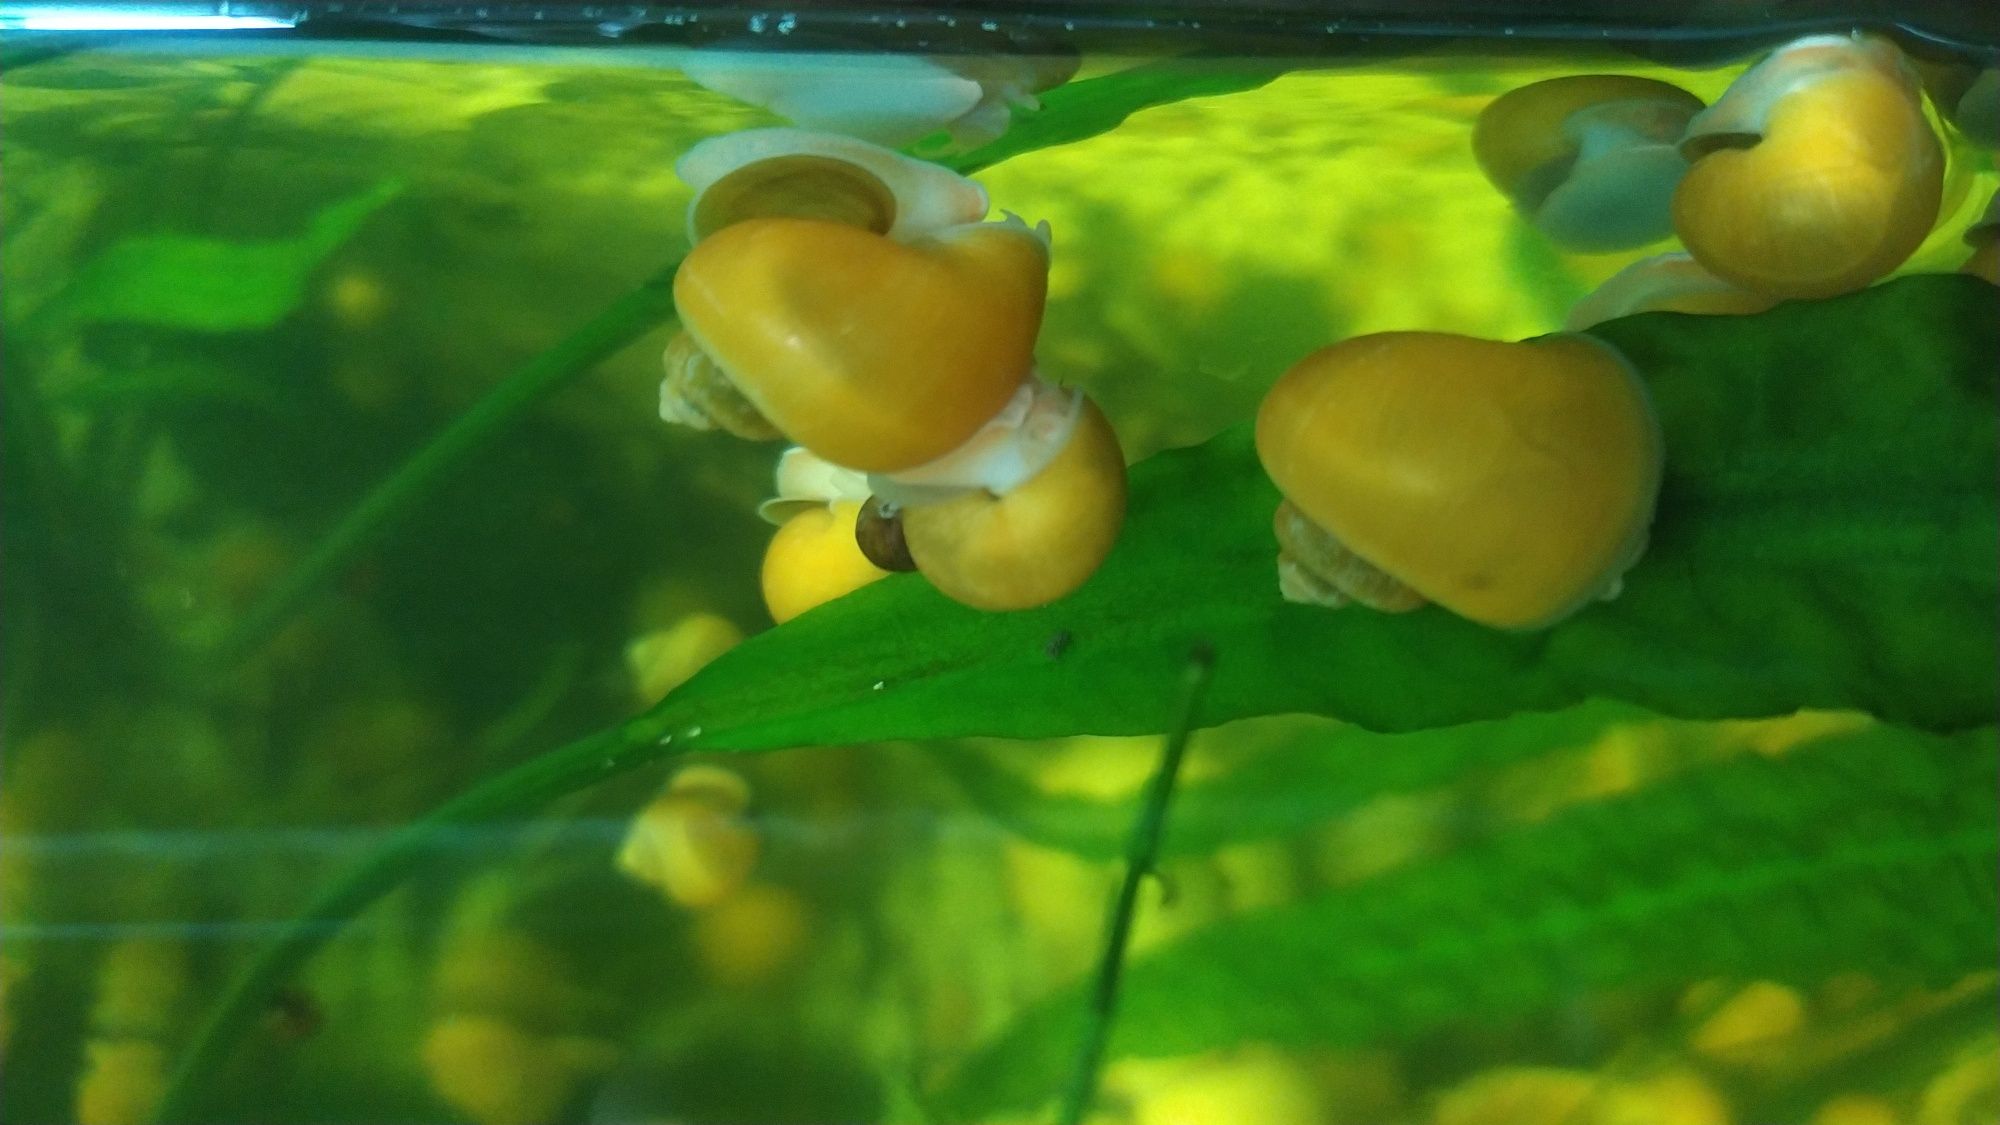 Ампулярія, акваріумні жовті равлики, ампулярия, жёлтая улитка.